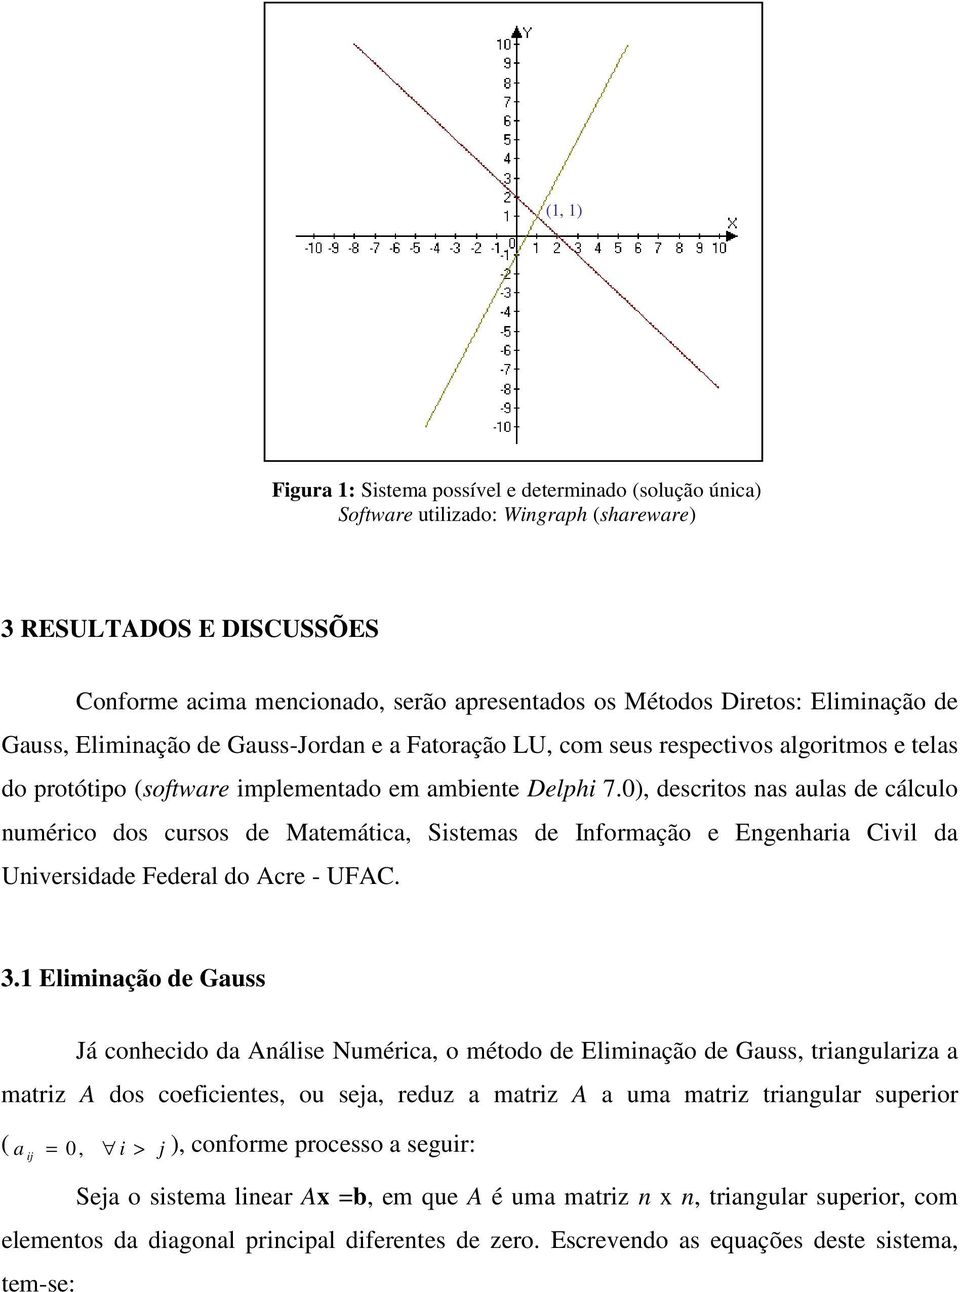 ), descritos s uls de cálculo umérico dos cursos de Mtemátic, Sistems de Iformção e Egehri Civil d Uiversidde Federl do Acre - UFAC. 3.